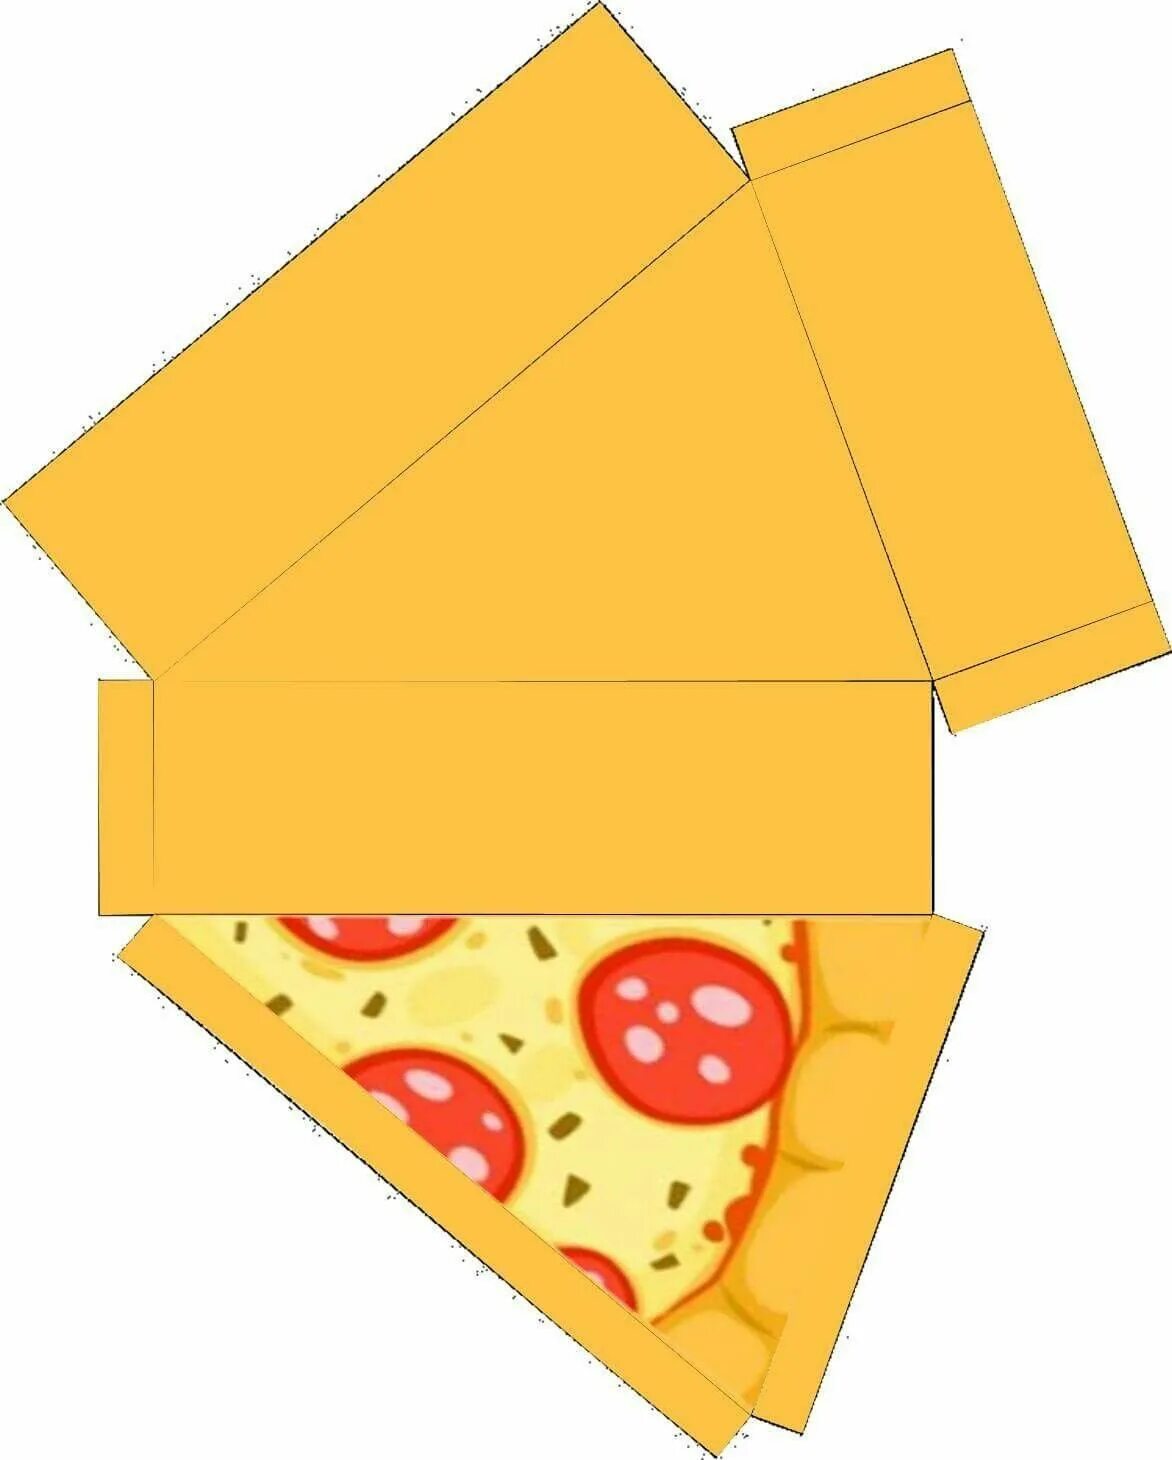 Бумажная еда из бумаги. Коробочка для пиццы из бумаги. Объемная еда из бумаги. Коробочка для бумажной пиццы из бумаги. Кусок пиццы из картона.